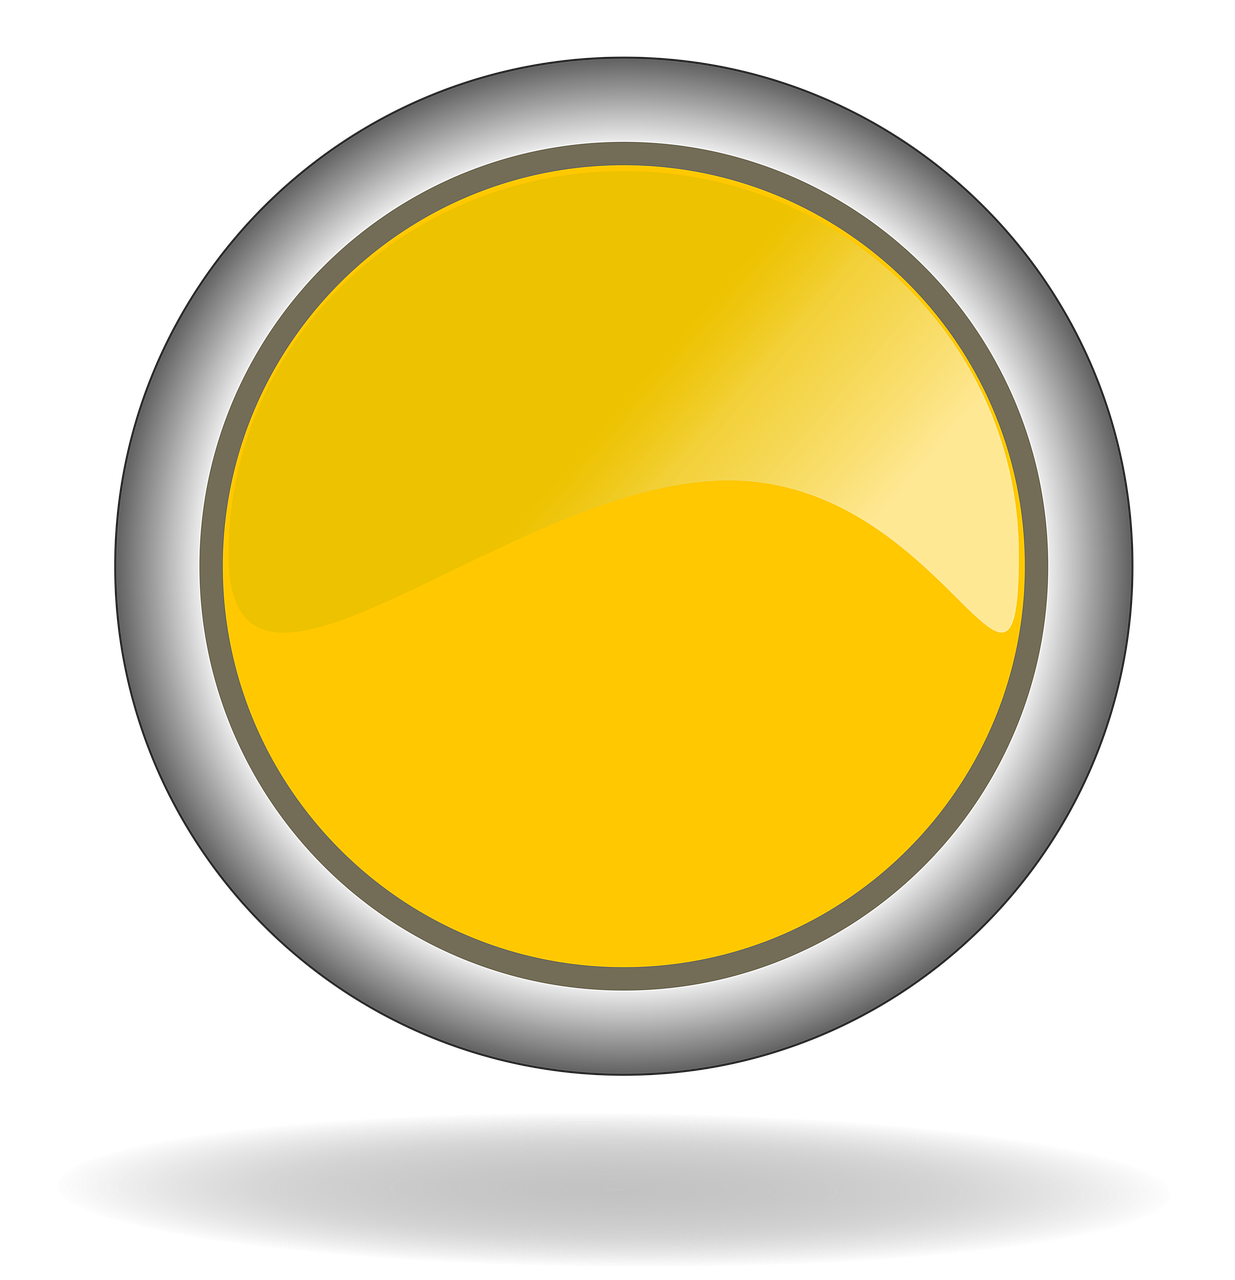 yellow yellow button button free photo